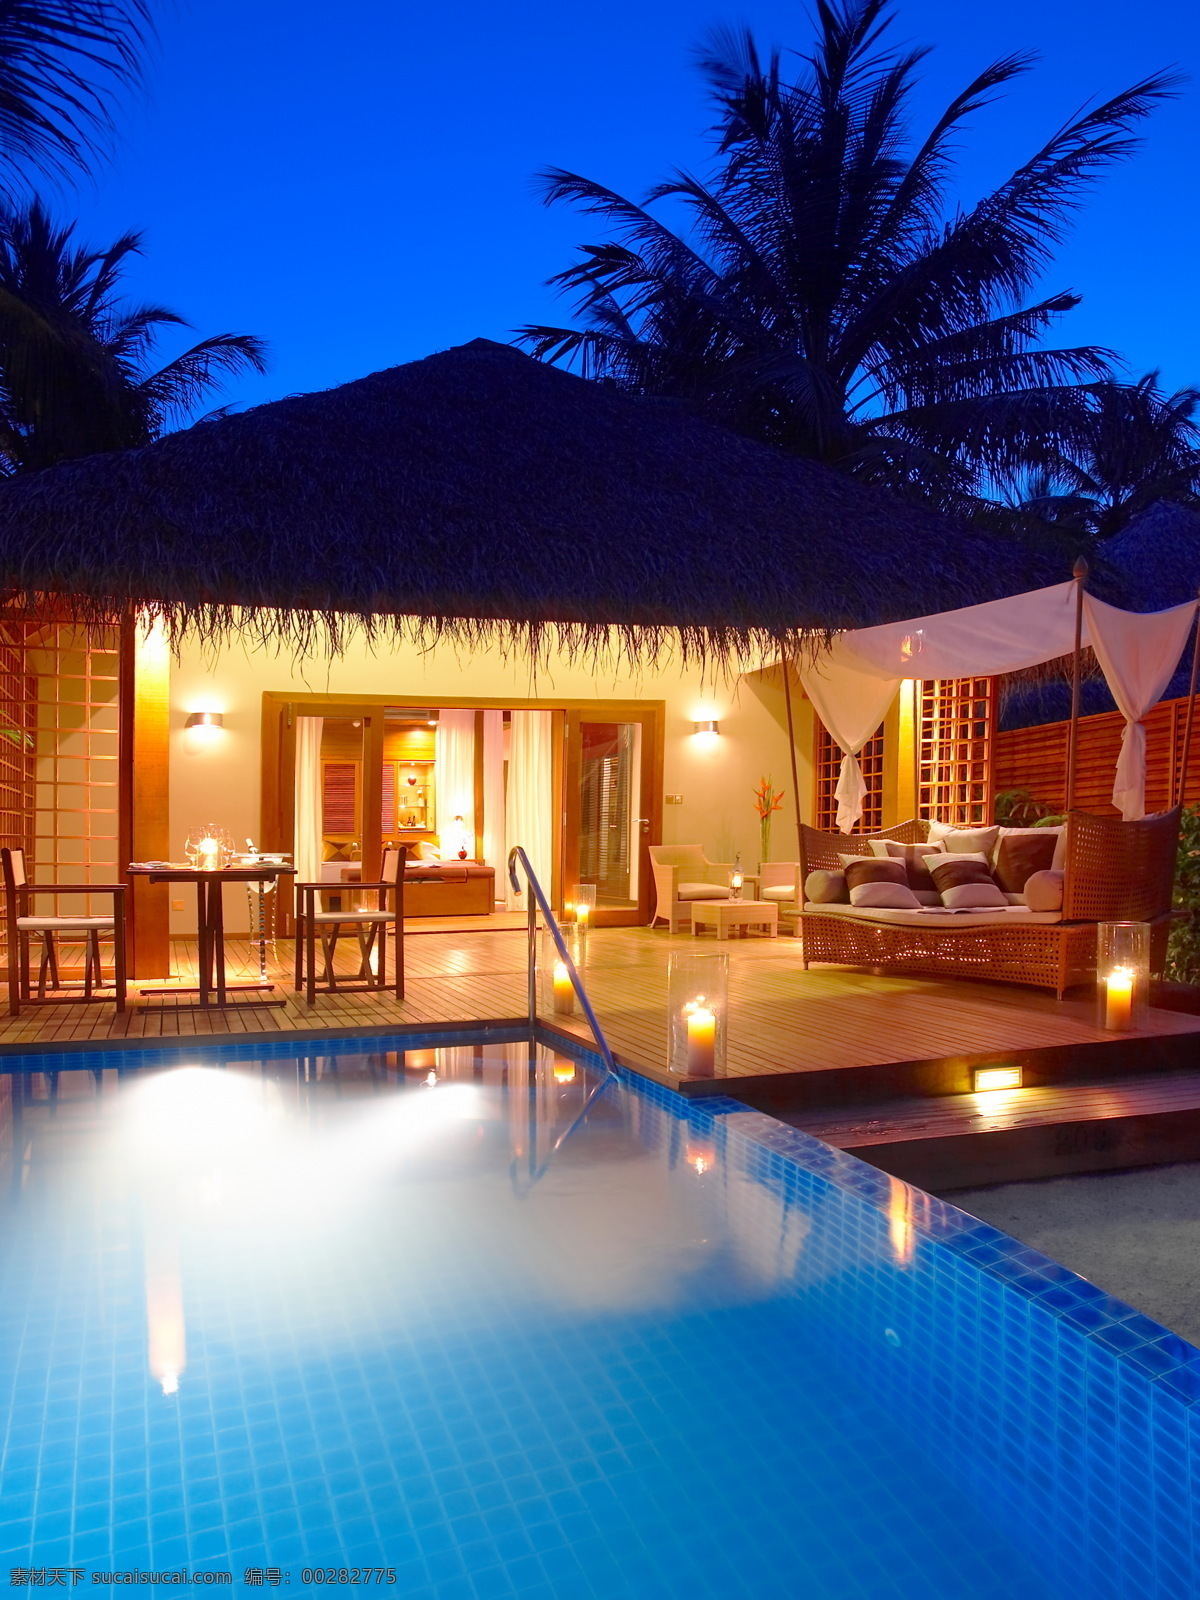 马尔代夫 豪华 泳池 套房 maldives 度假 旅游 海边 别墅 游泳池 度假屋 酒店客房 灯光 沙发 餐桌 塞舌尔 国外旅游 旅游摄影